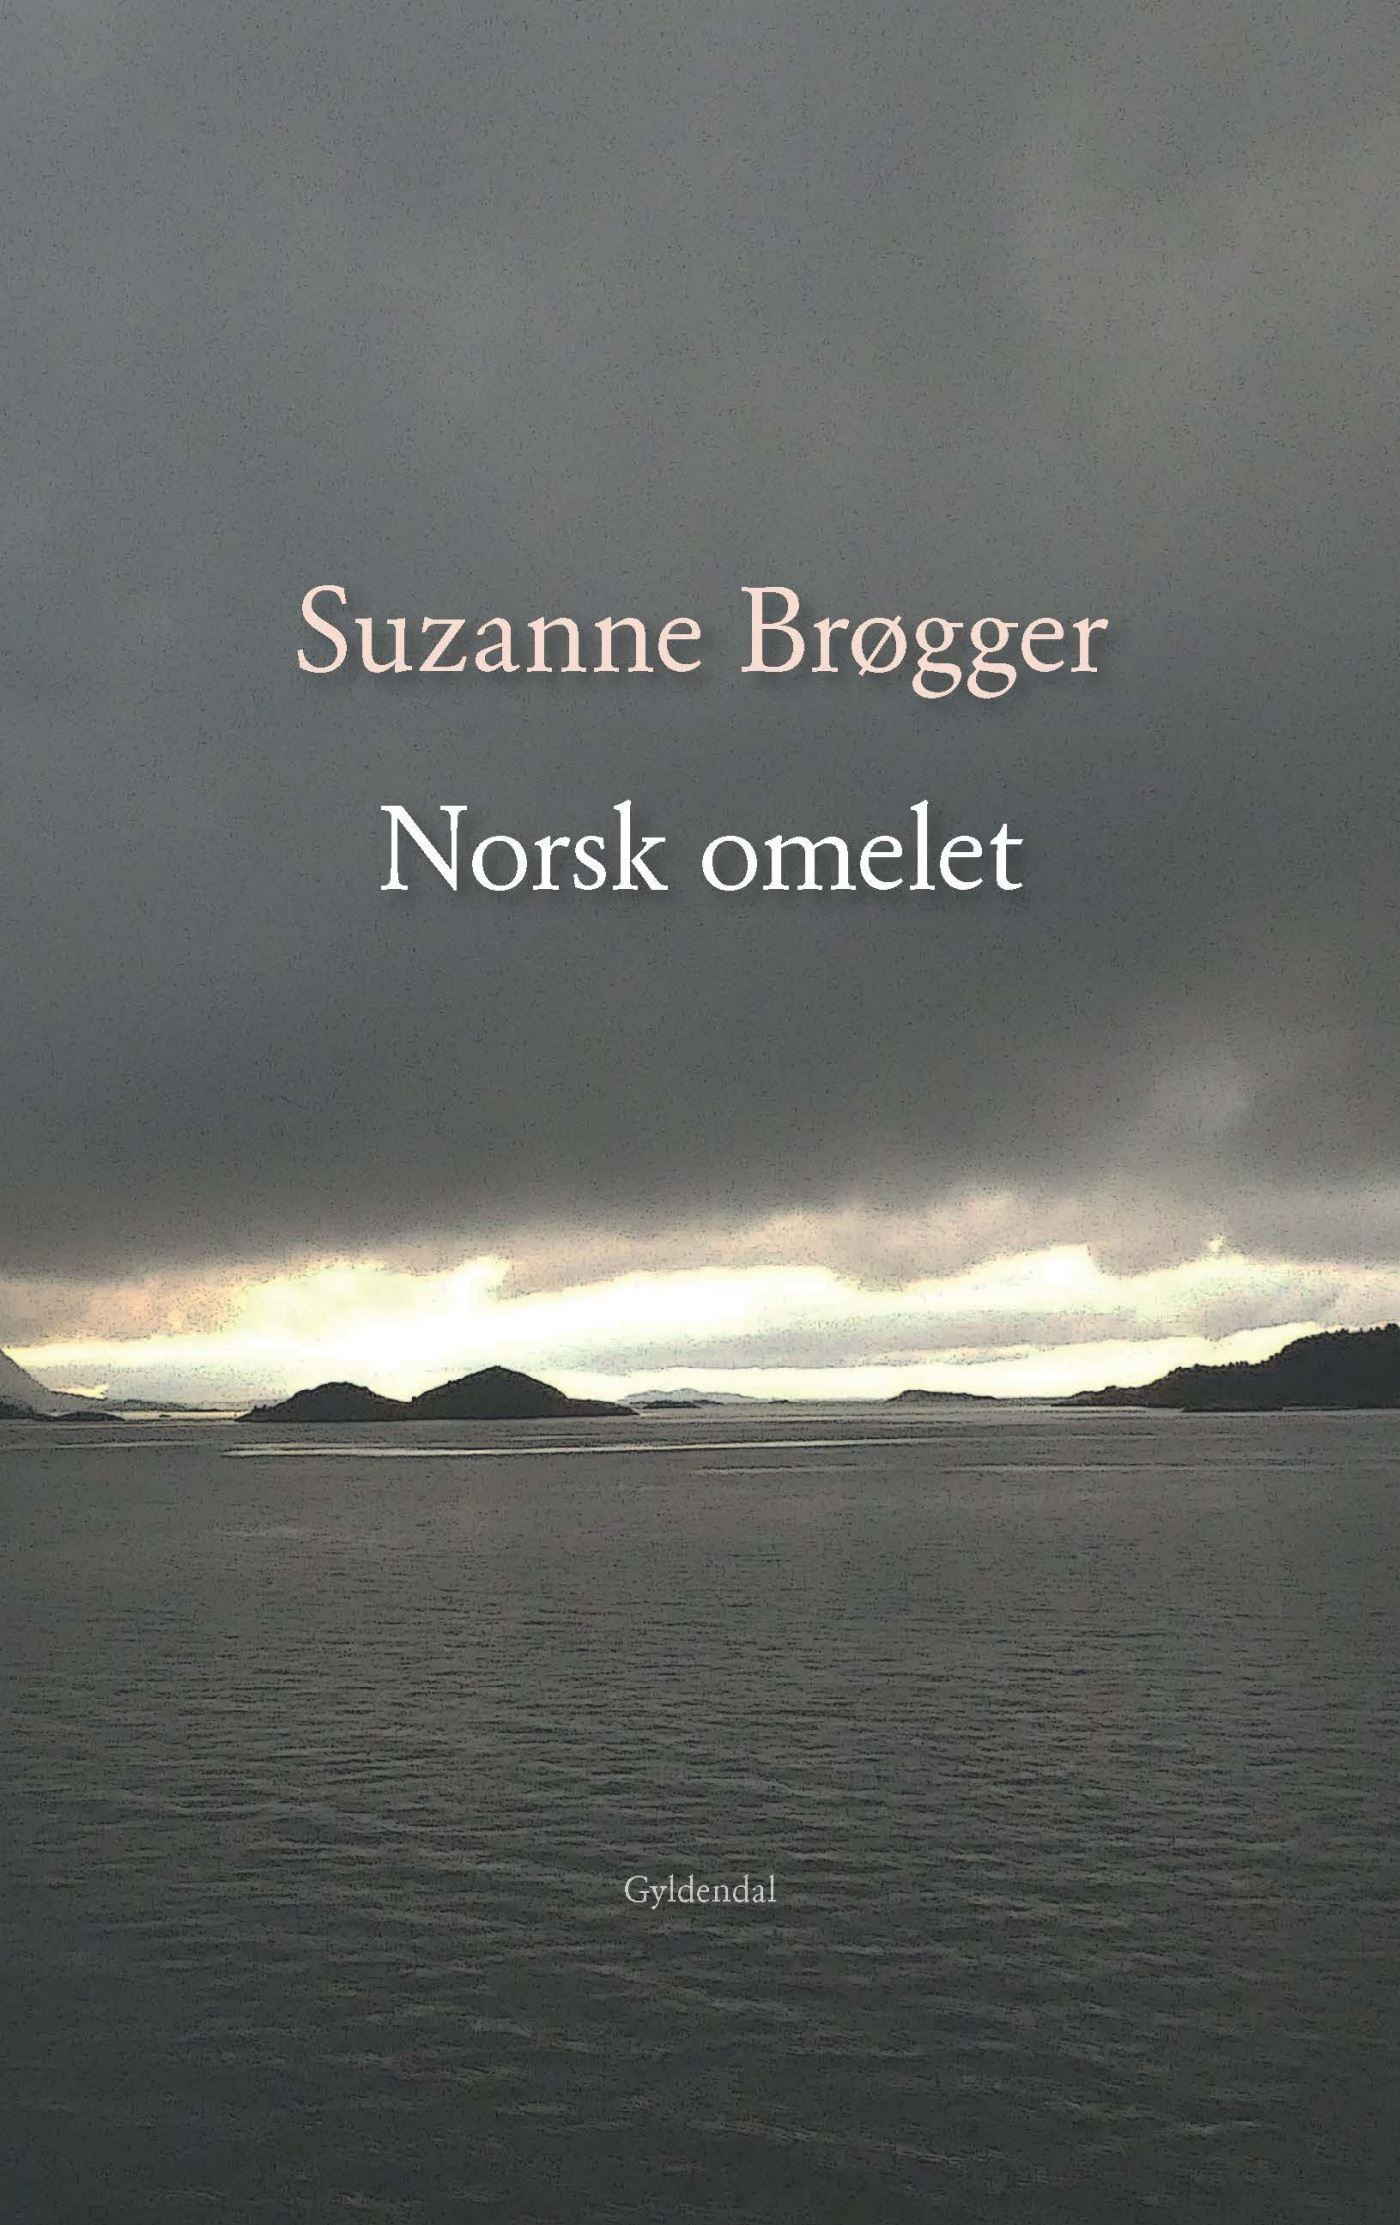 Norsk omelet, ljudbok av Suzanne Brøgger